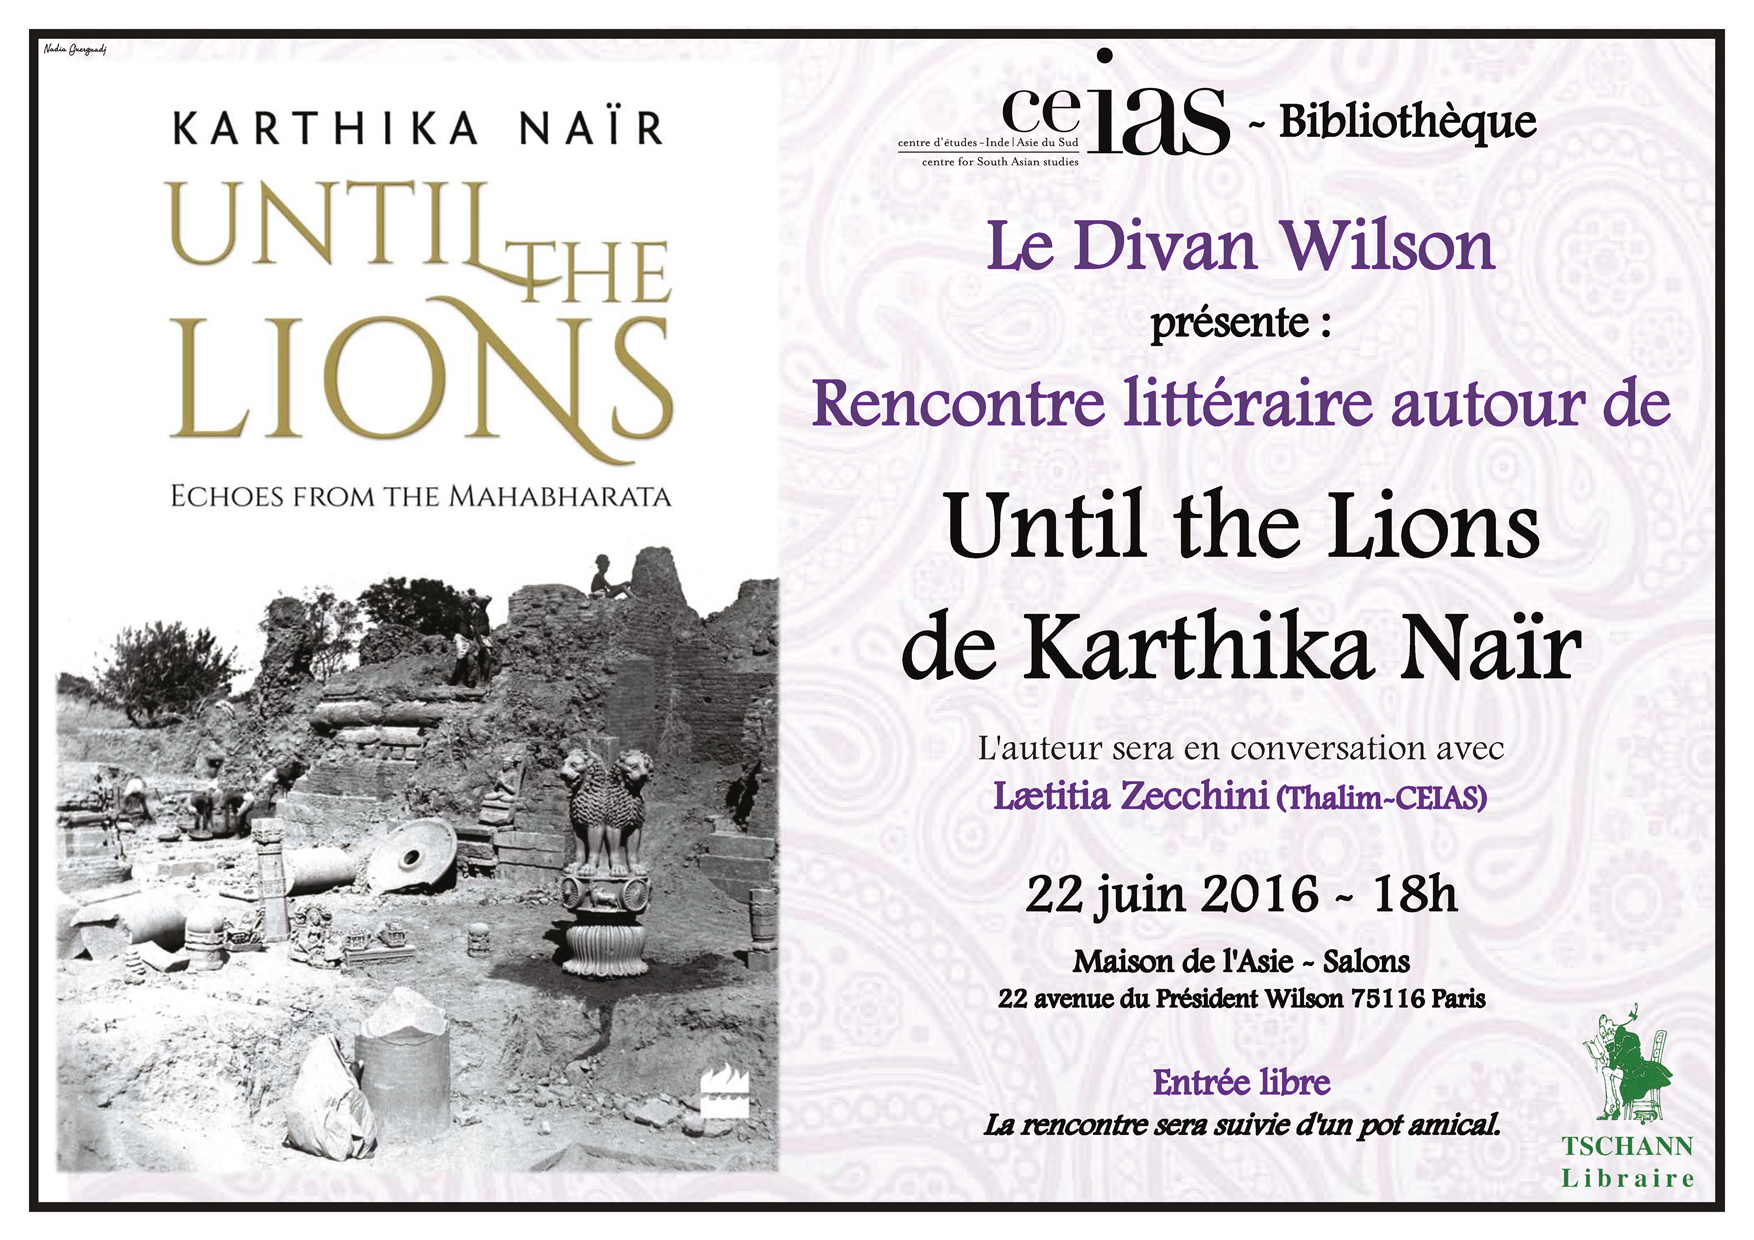 Rencontre littéraire autour de Until the Lions de Karthika Naïr